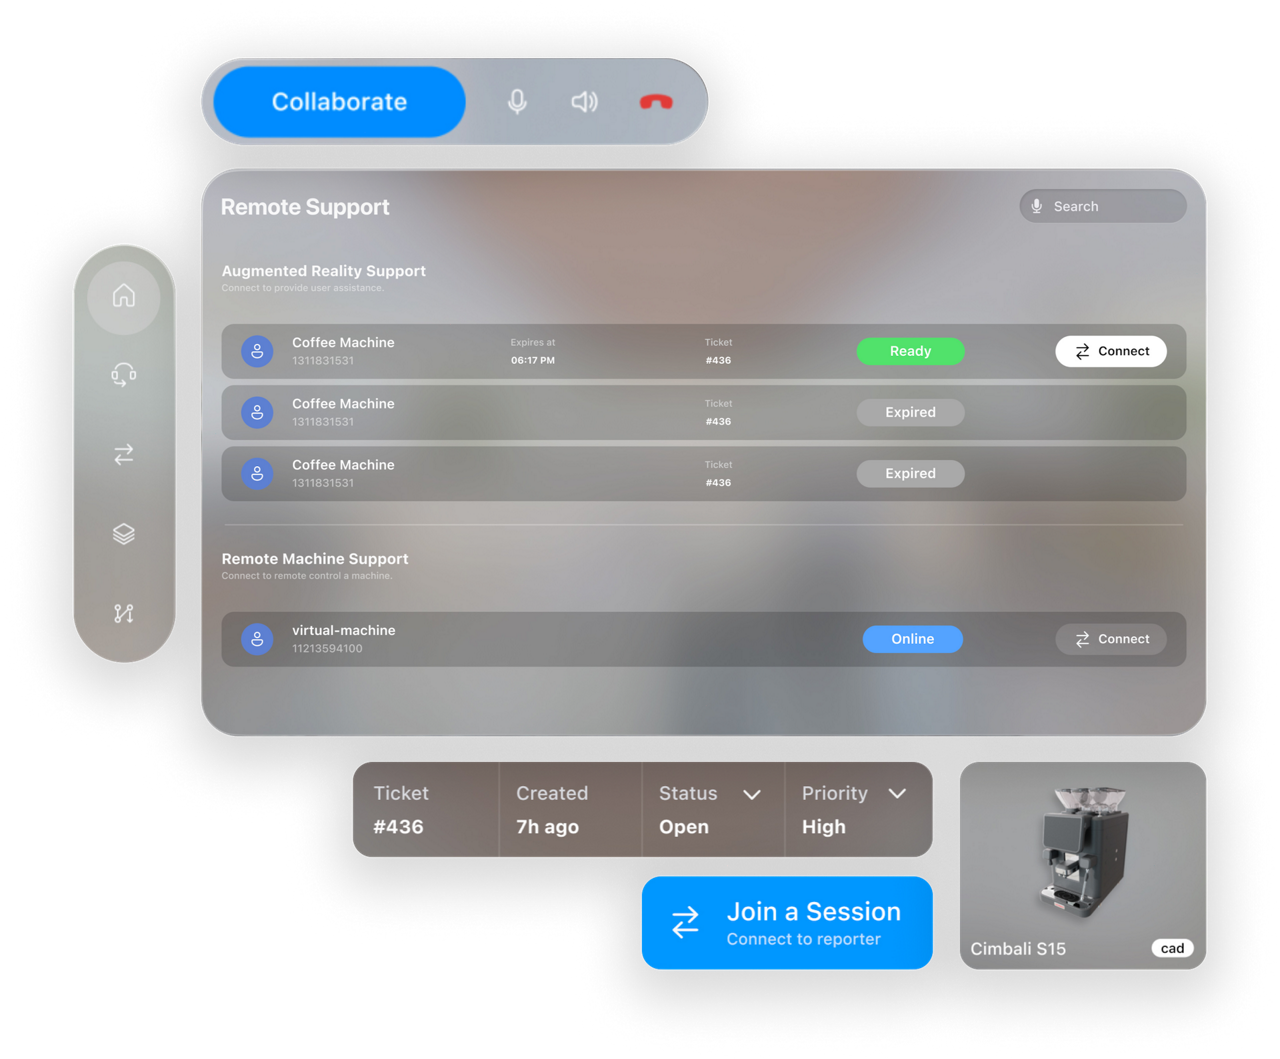 Vista general de la interfaz de usuario de las asistencia remota para las máquinas de café con Apple Vision Pro